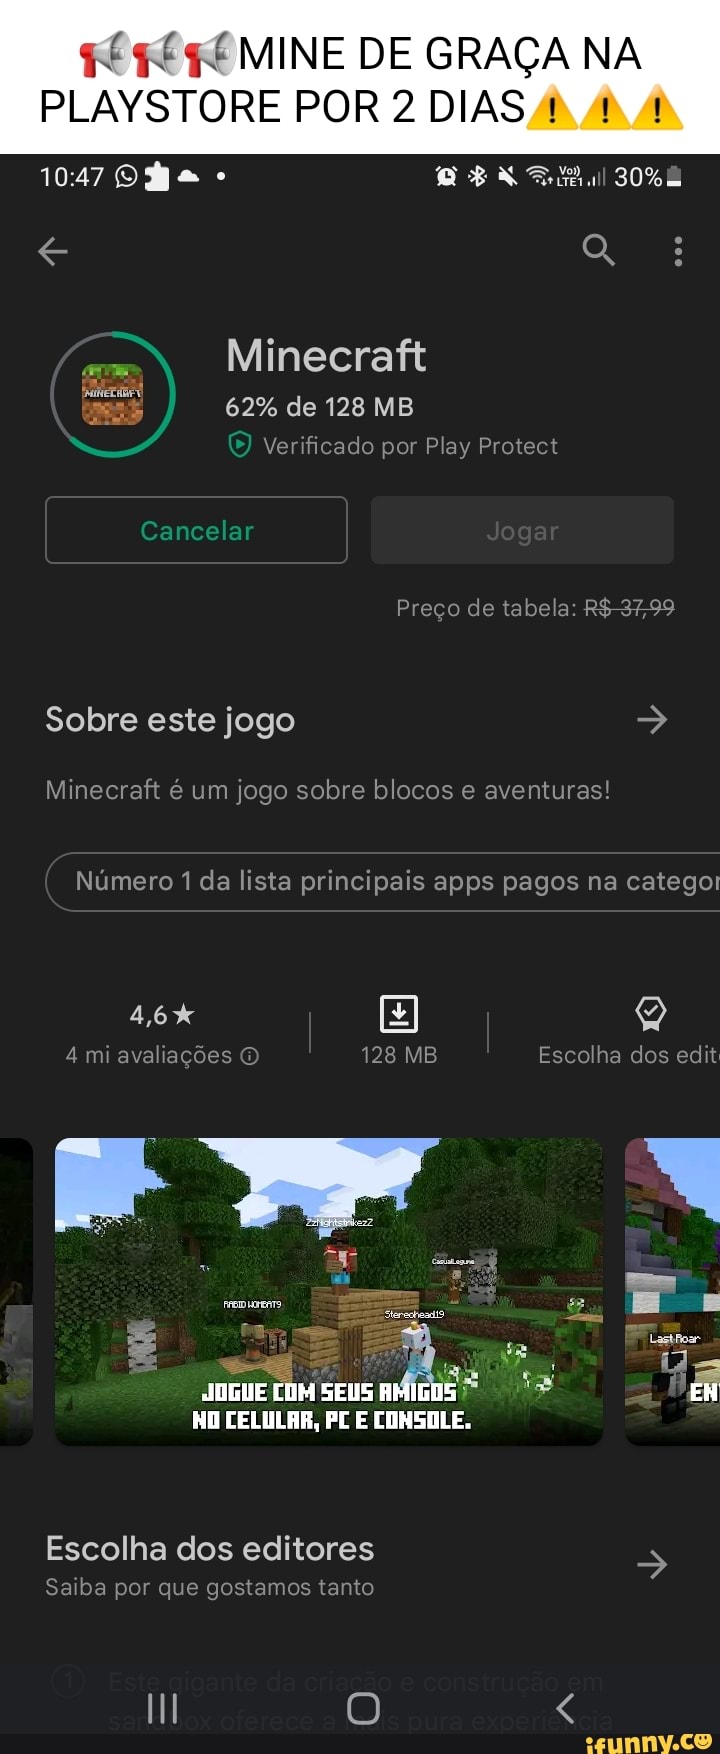 MINE DE GRAÇA NA 30% TORE POR 2 DIAS Minecraft 62% de 128 MB